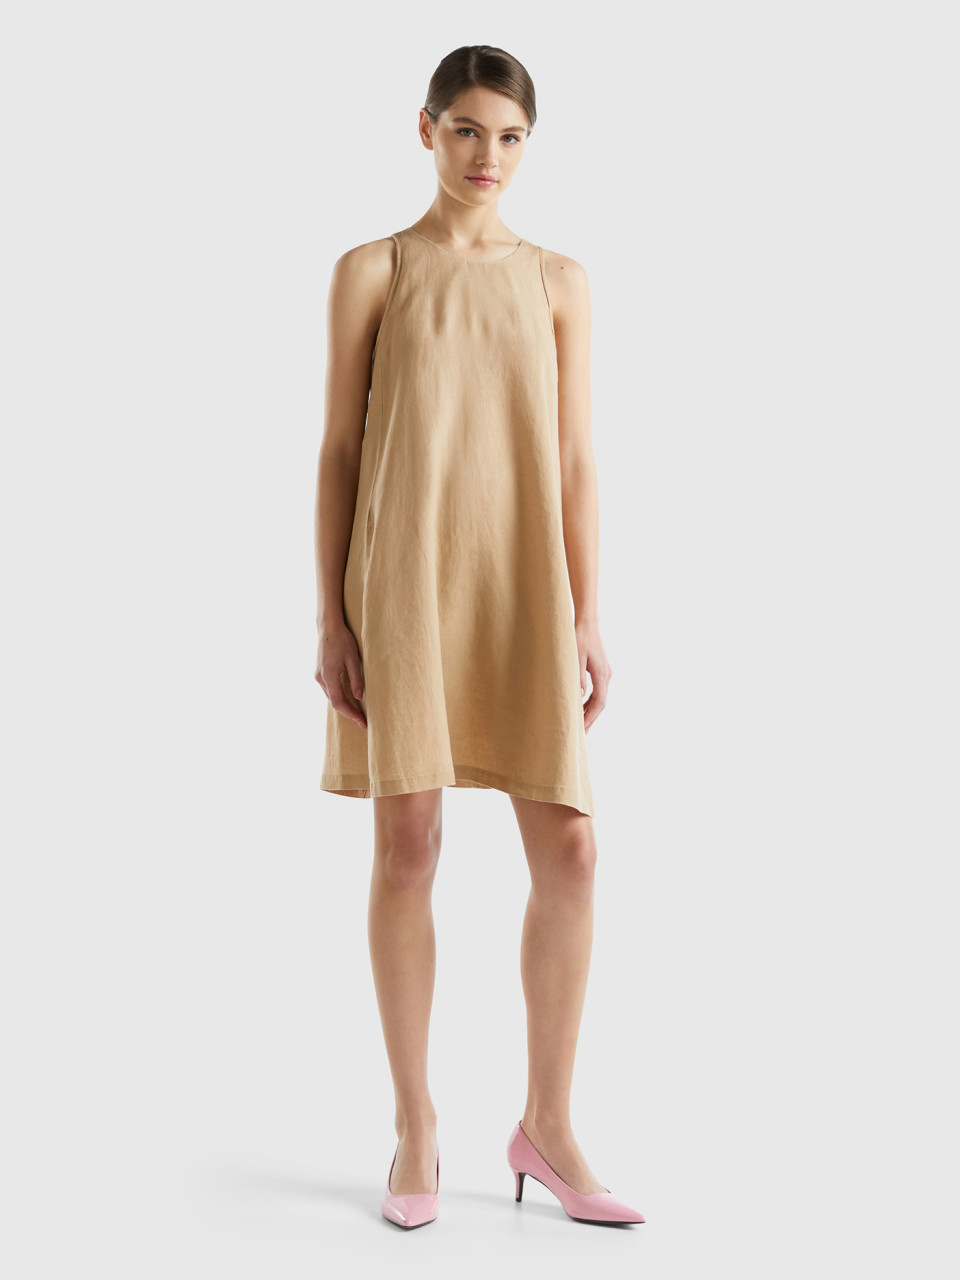 Benetton, Sleeveless Dress In Pure Linen, Camel, Women